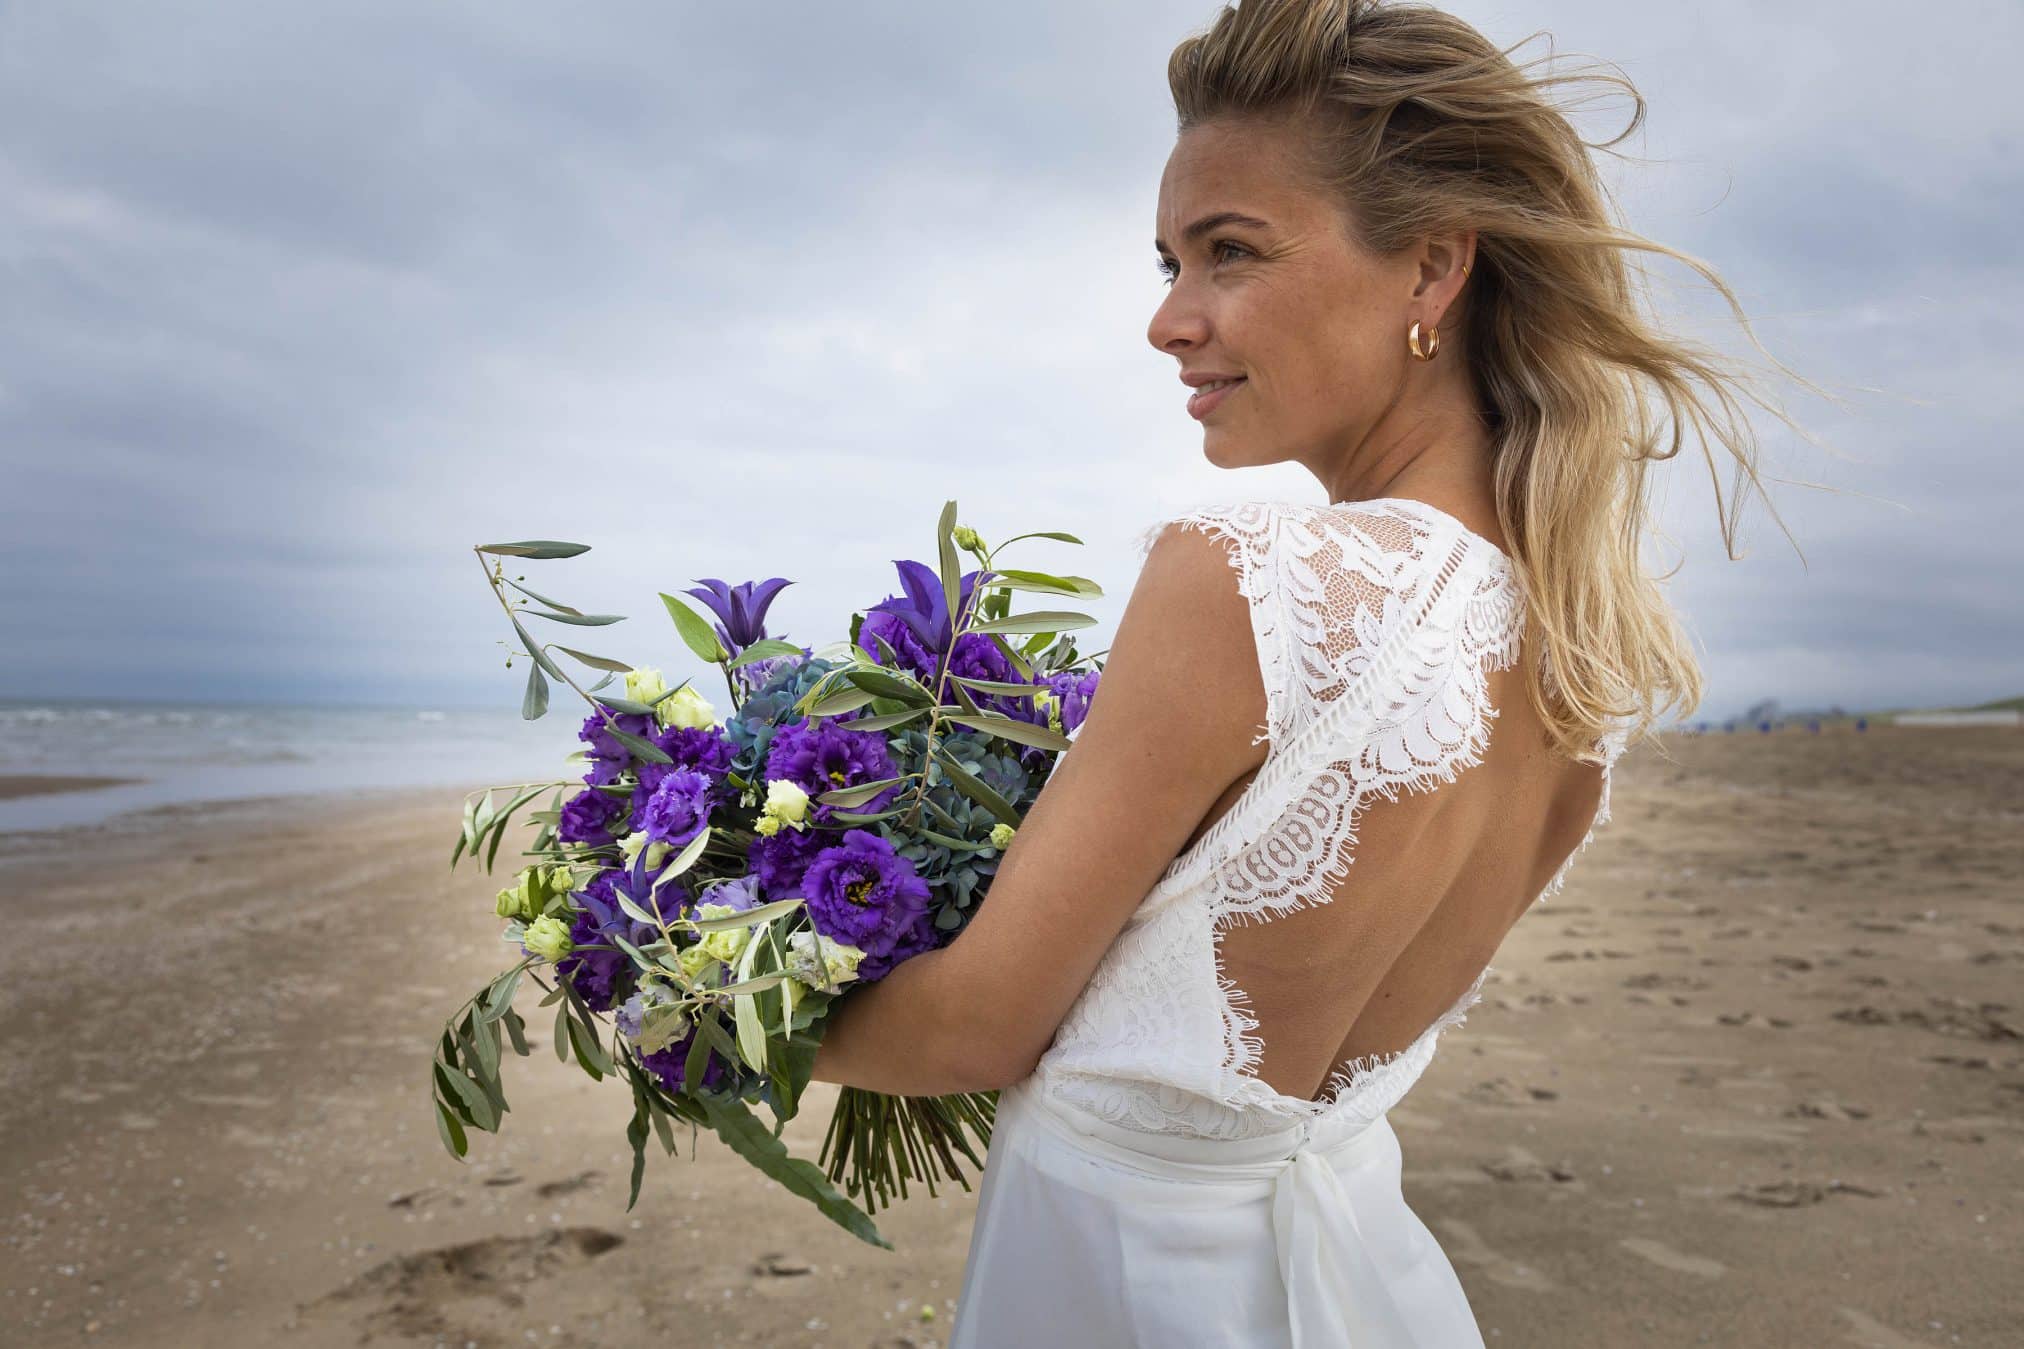 Lisianthus-Eustoma-Wedding-Flower-Arrangement-Bride-Bouquet-Bridal Bouquet-White-Beach-Pink-Purple-Blue